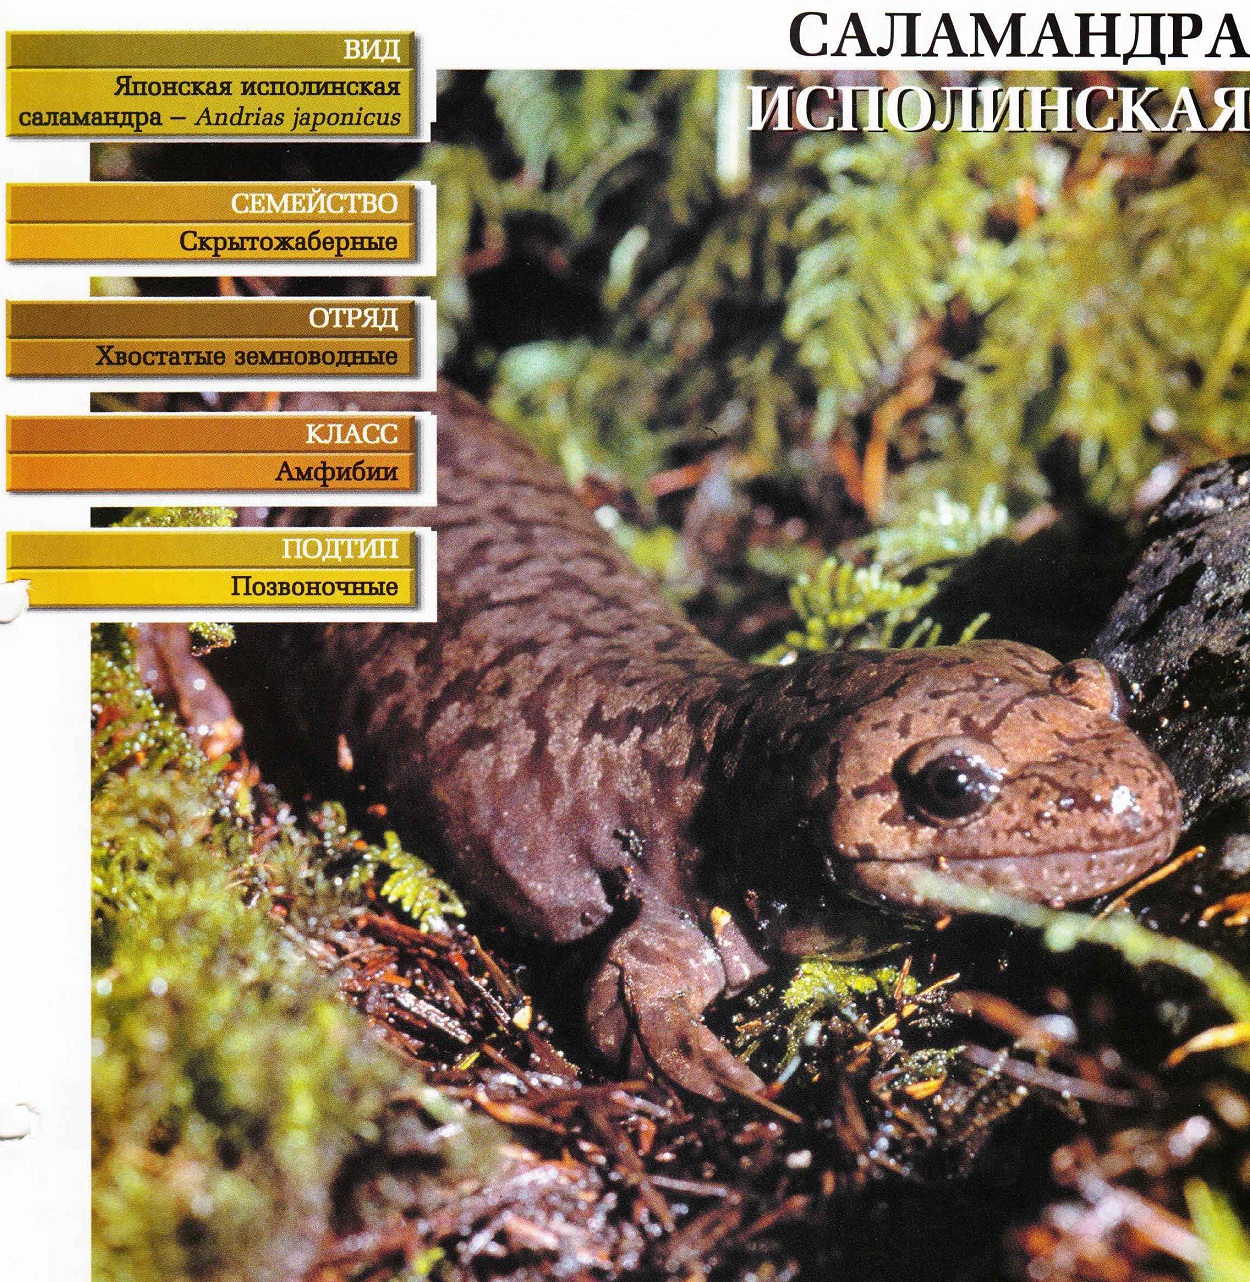 Систематика (научная классификация) саламандры исполинской. Andrias japonicus.